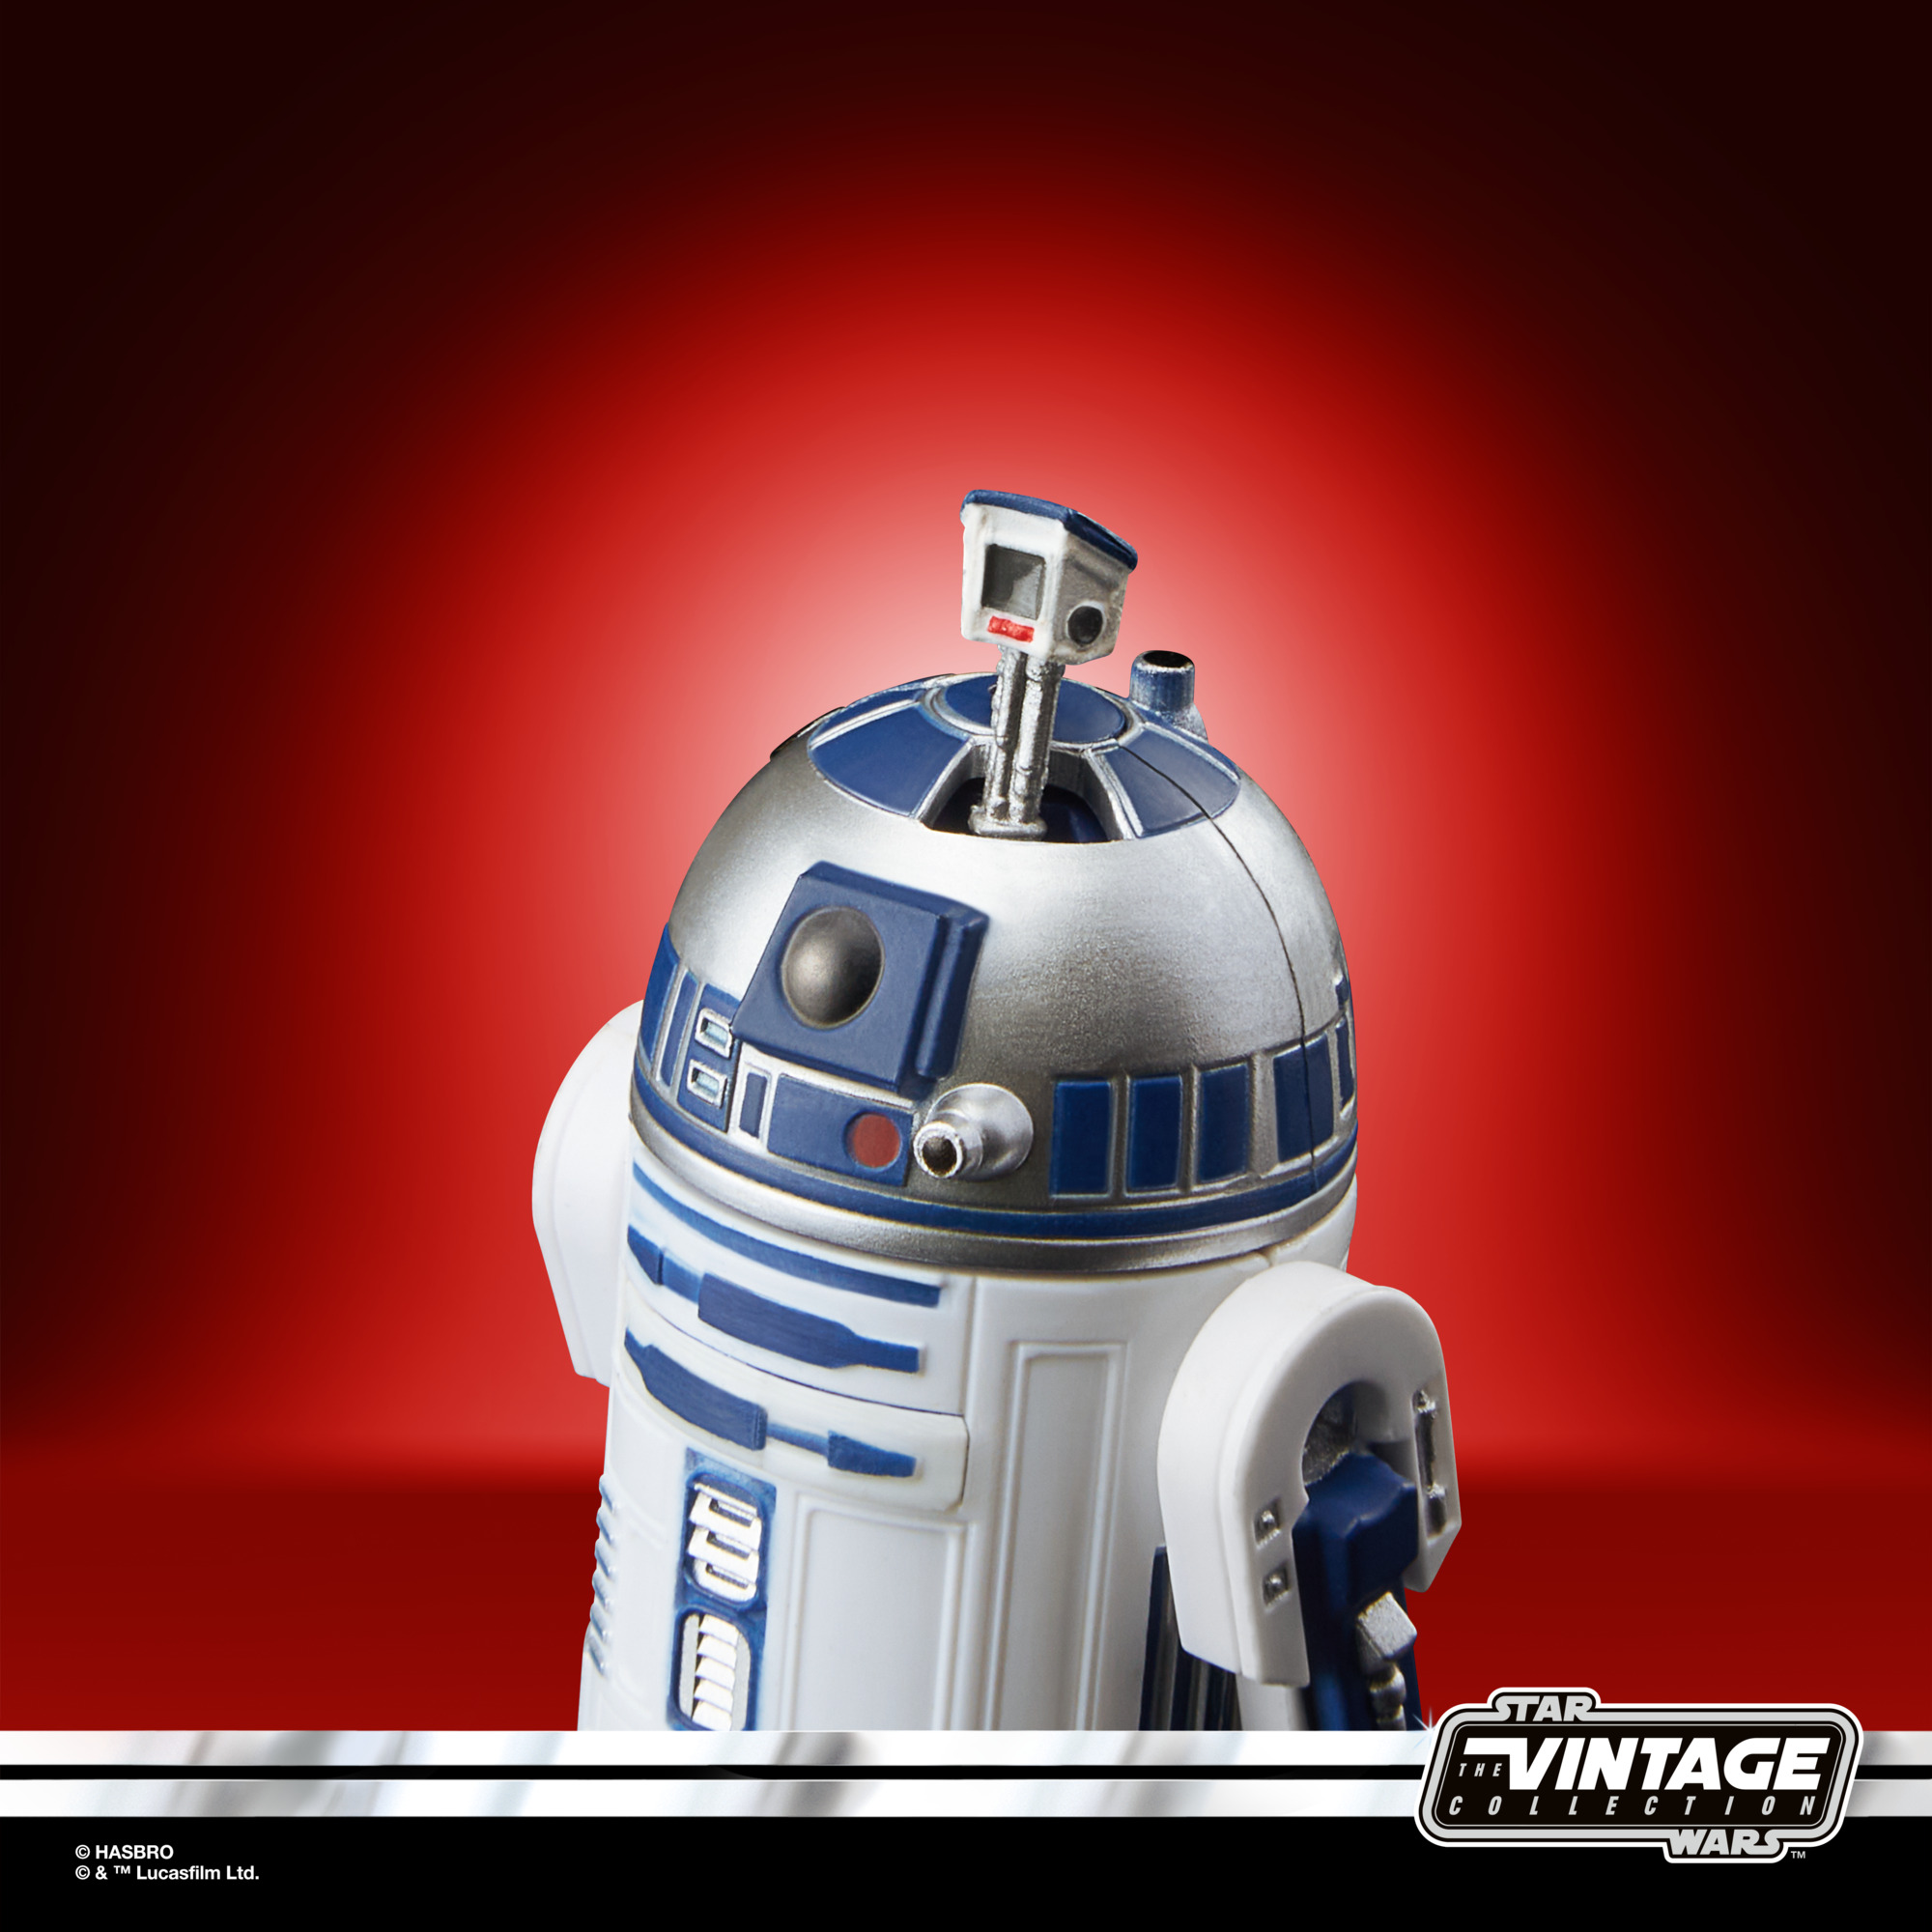 Star Wars The Vintage Collection Artoo-Detoo (R2-D2) F55705L6 5010993968411